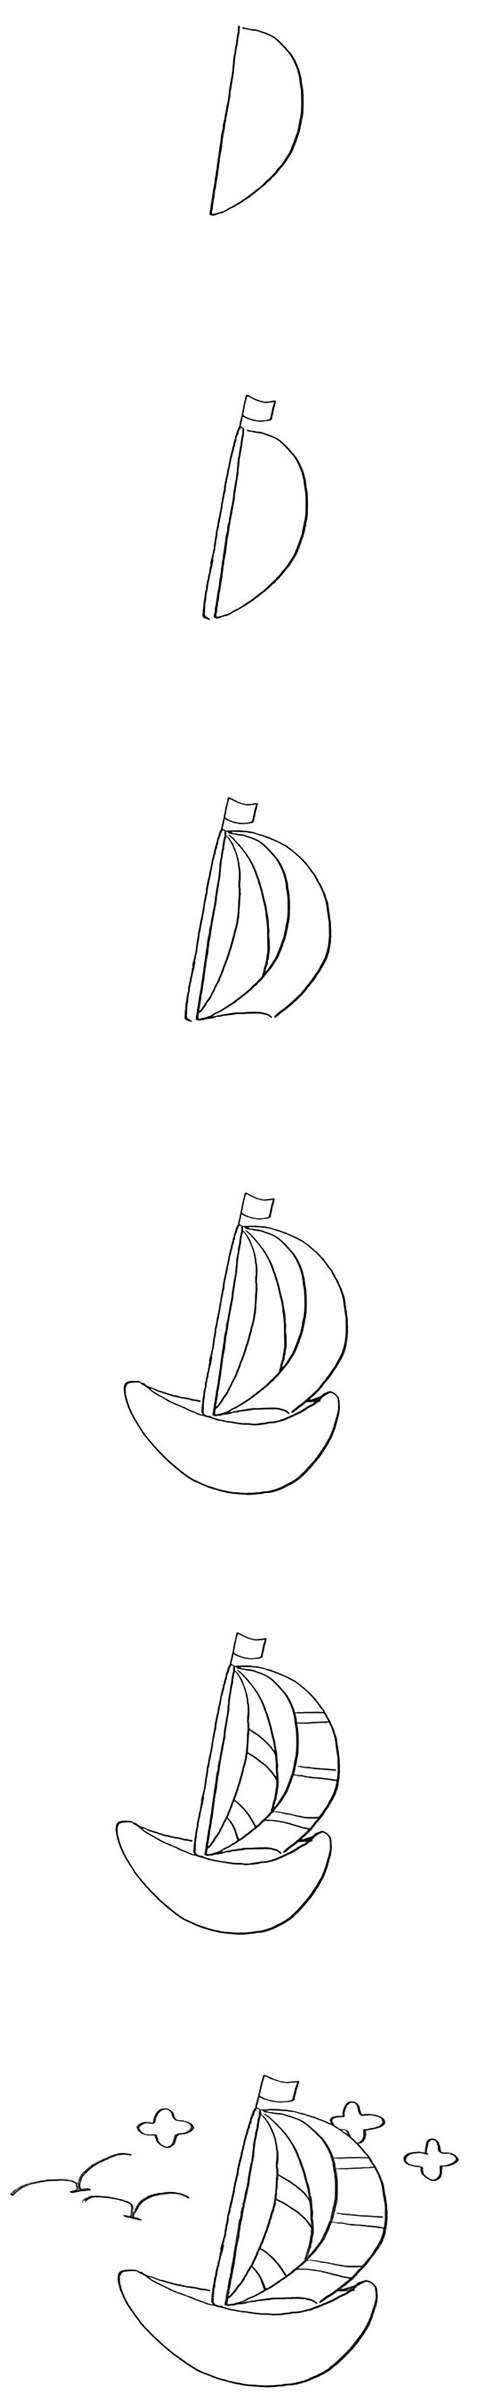 幼儿卡通帆船简笔画步骤教程图片简单好看